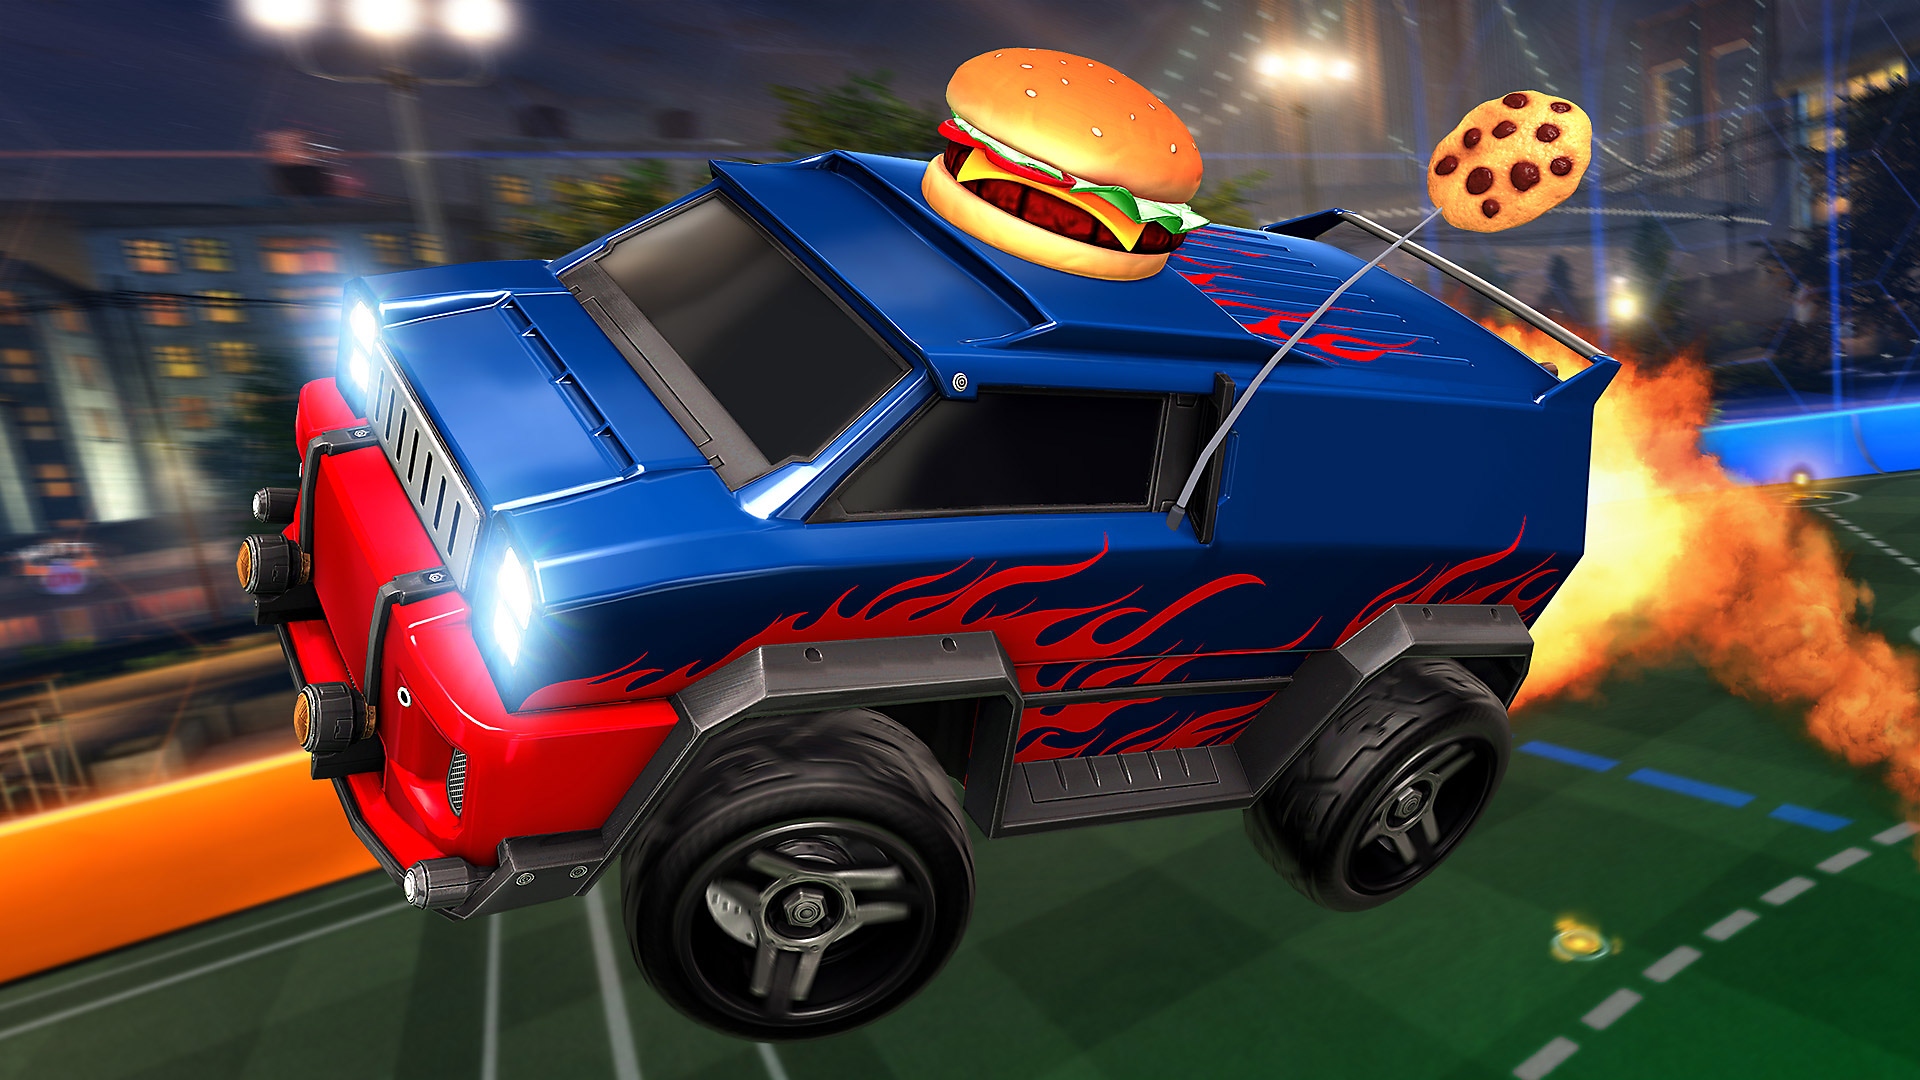 Captura de ecrã de Rocket League que mostra uma carrinha azul e vermelha com um hambúrguer curioso no topo